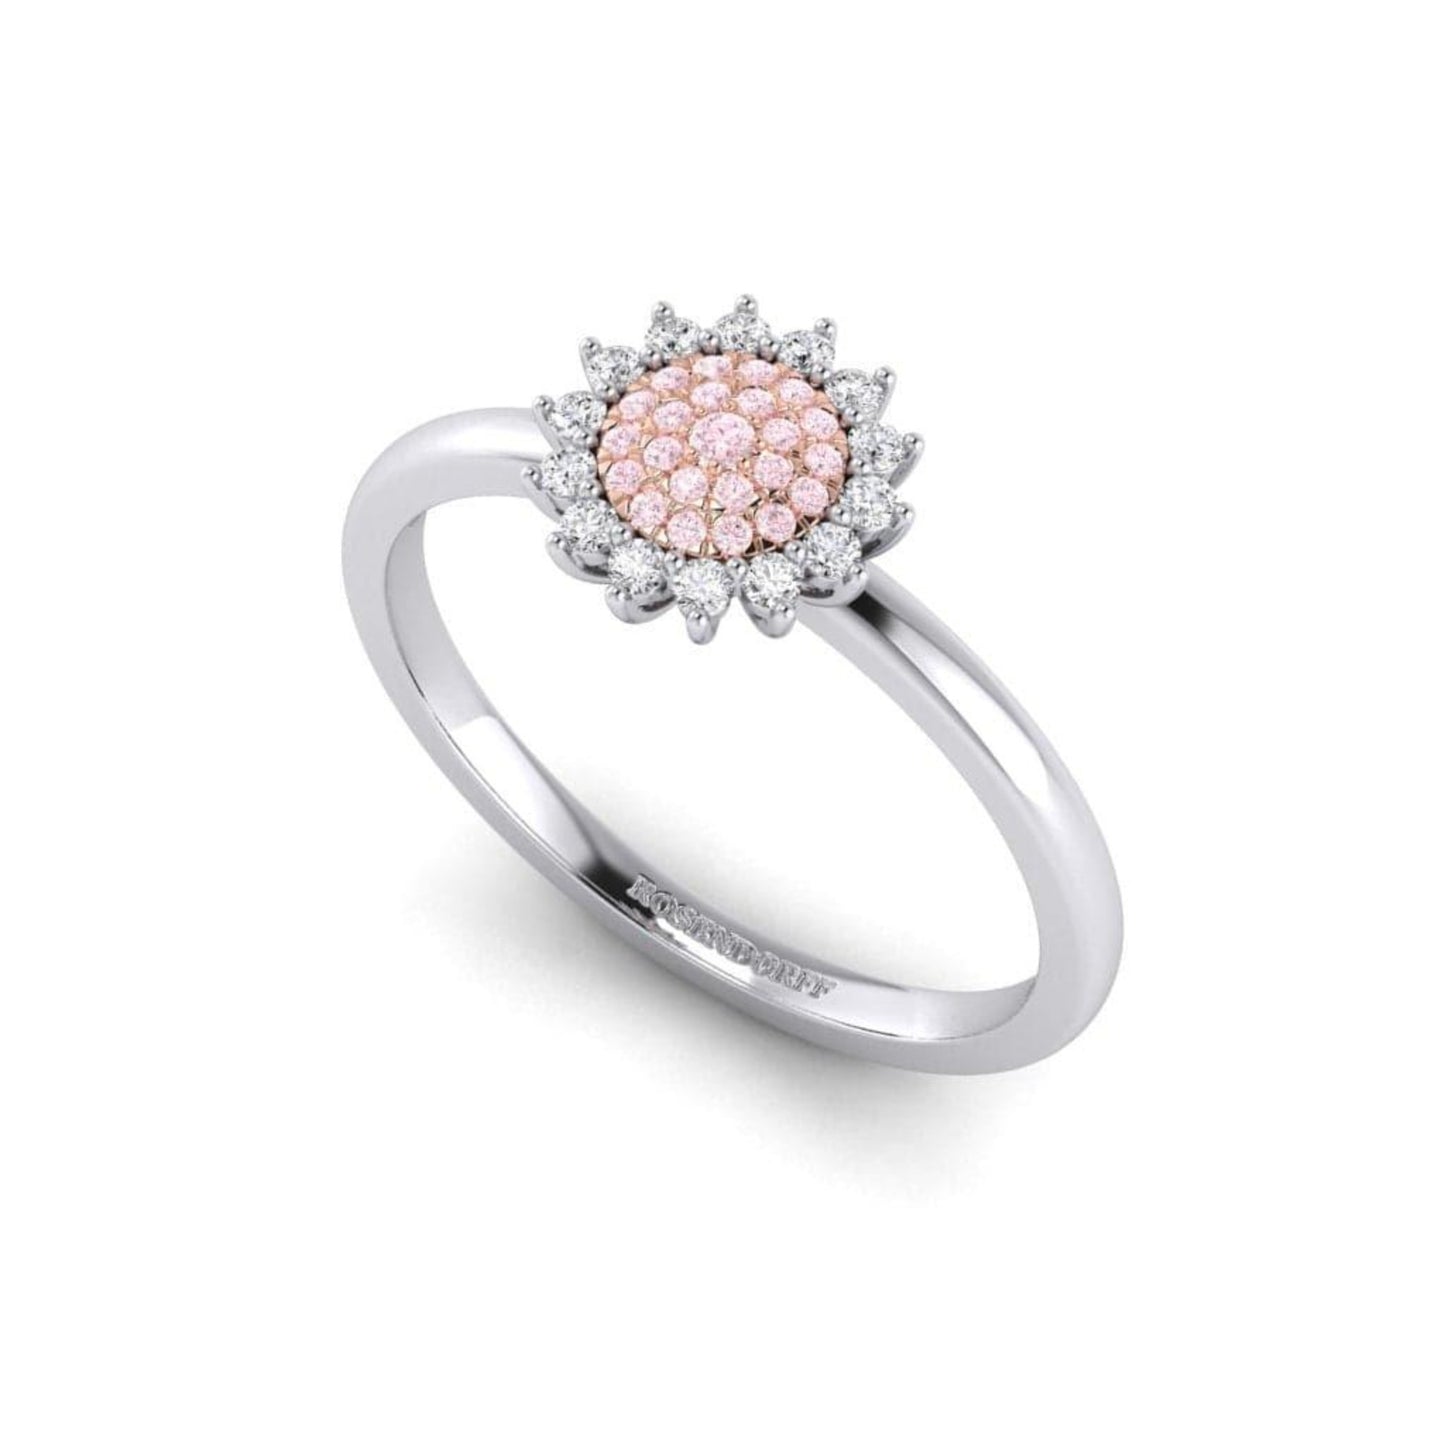 Eminence Pinks Sunflower Ring